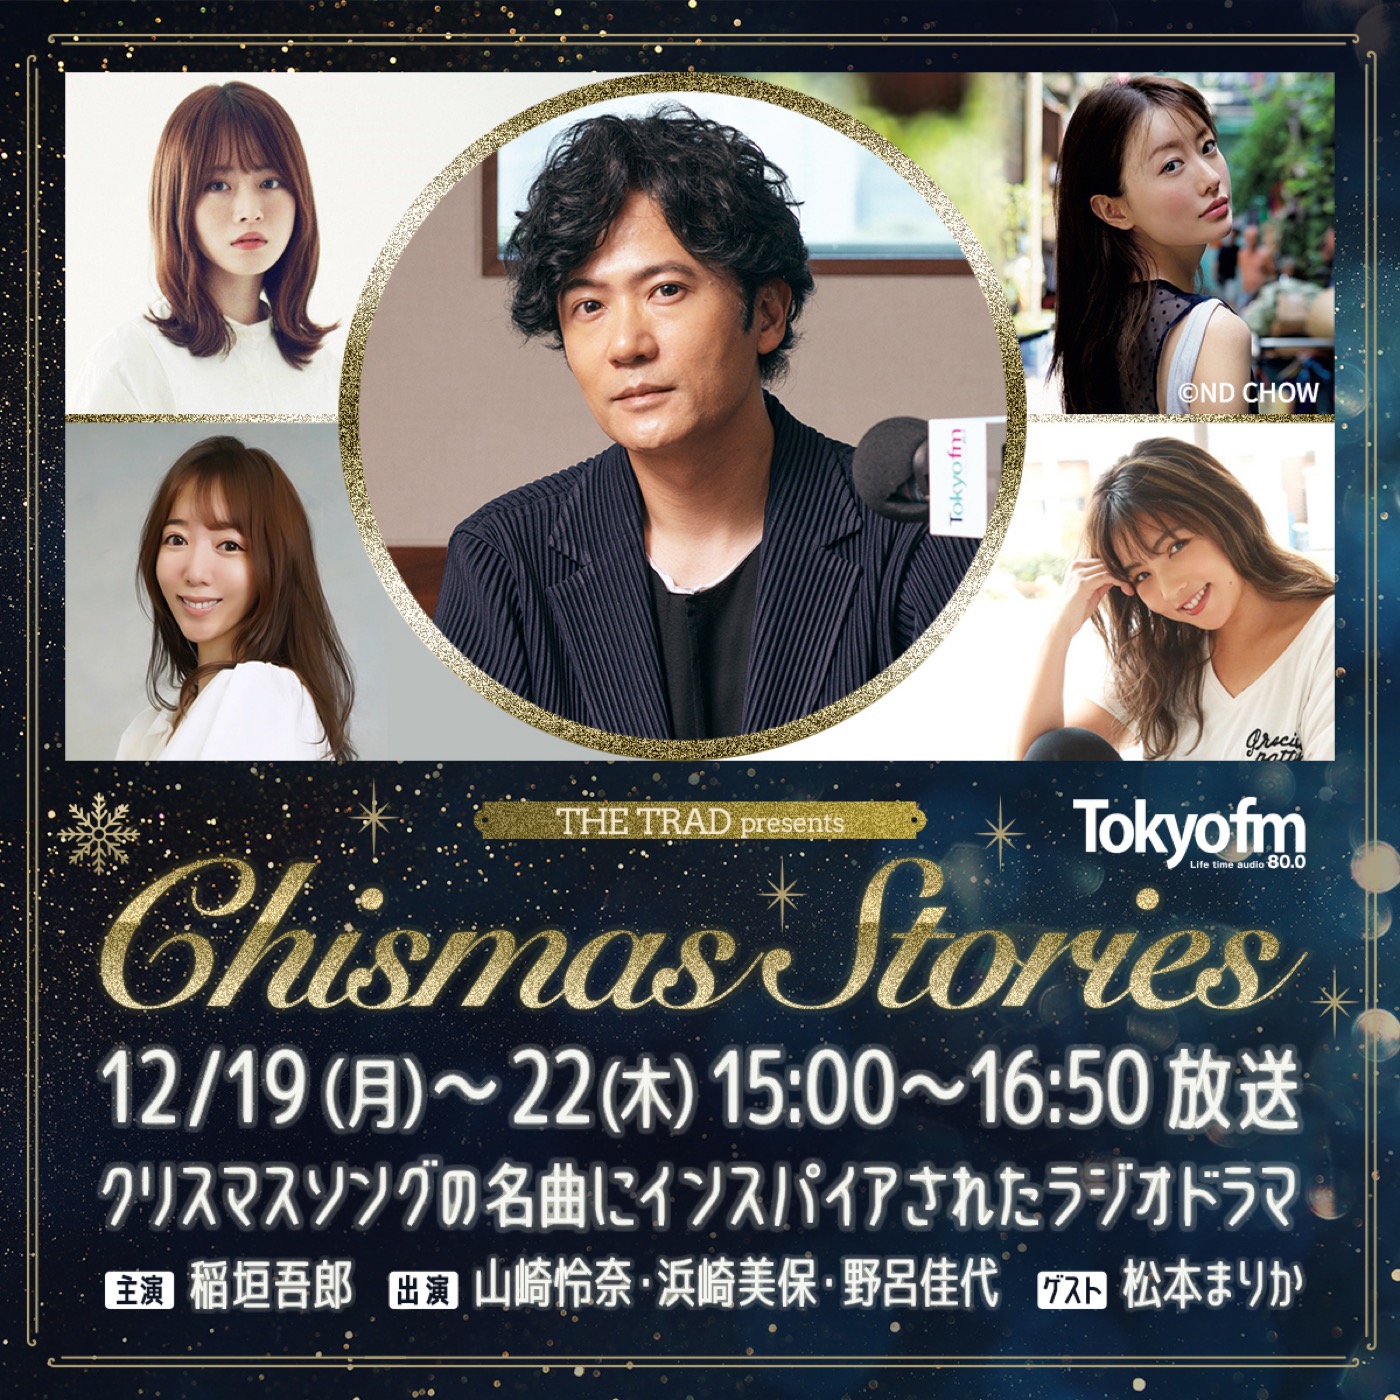 稲垣吾郎が主演するクリスマスラジオドラマ企画が、TOKYO FM『THE TRAD』で放送決定